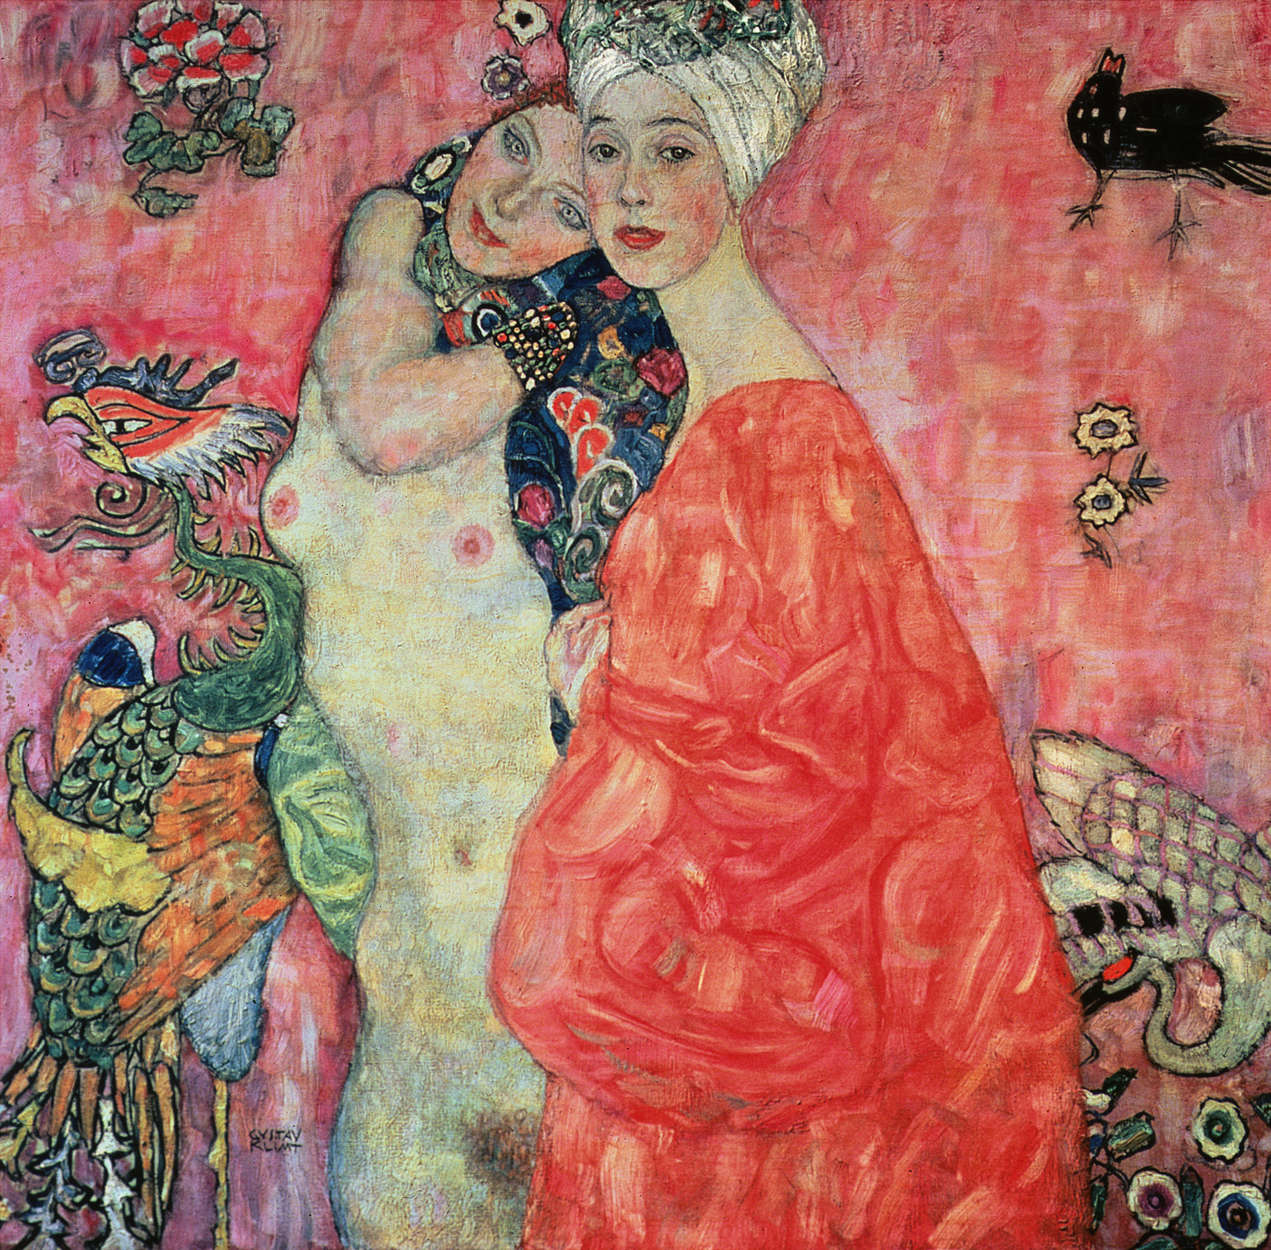             Mural "Las novias" de Gustav Klimt
        